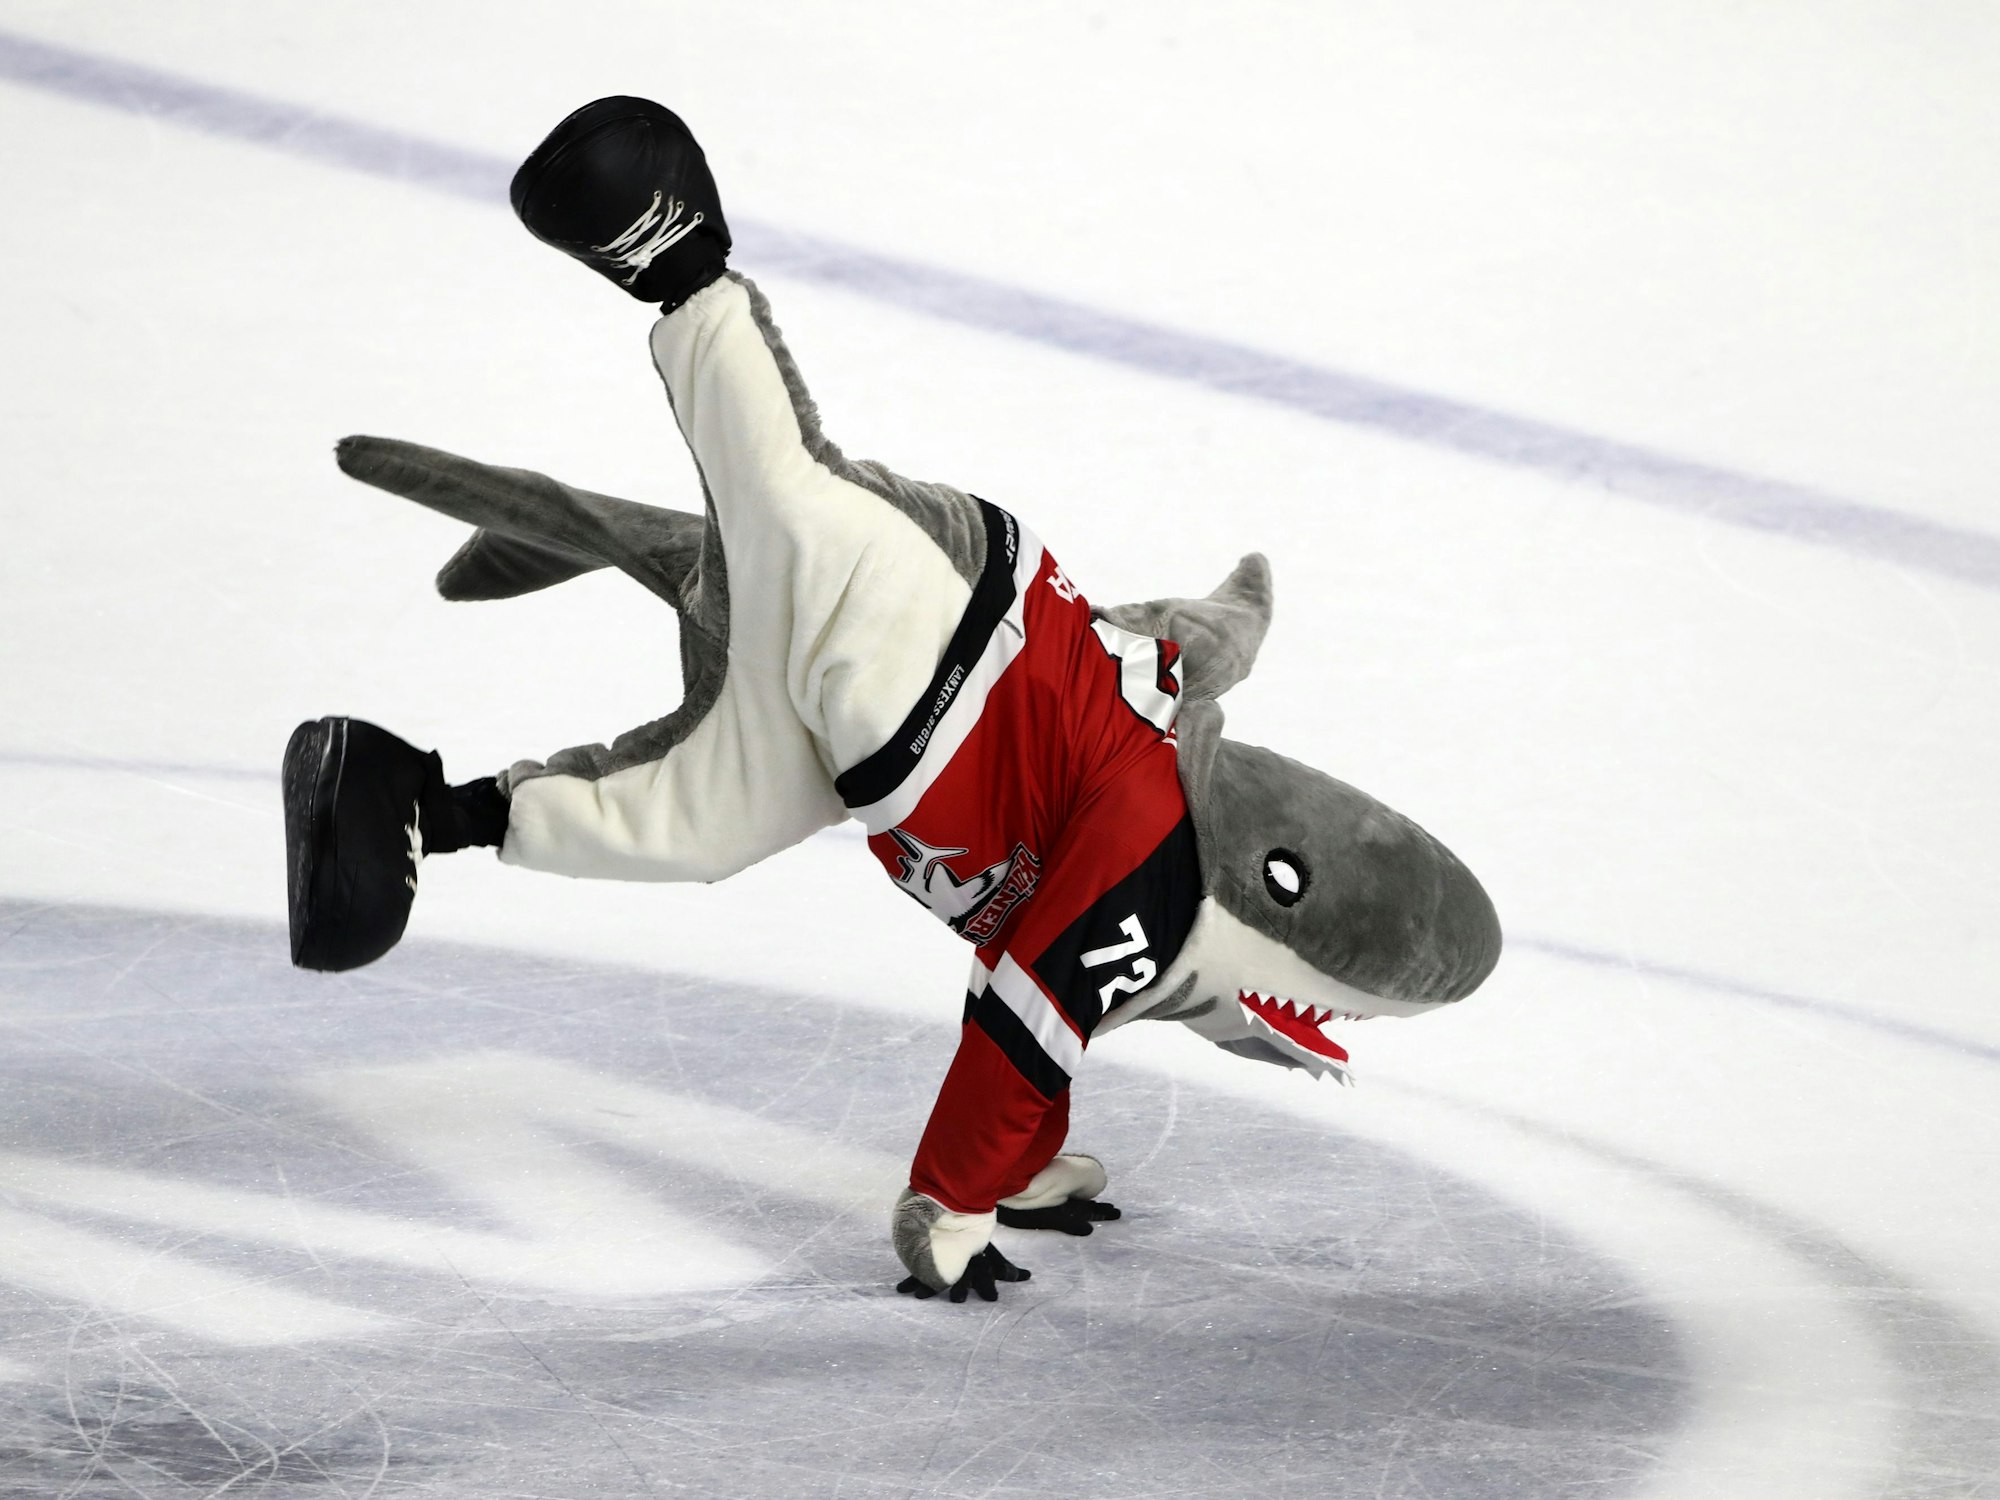 Maskottchen Sharky (Kölner Haie) tanzt auf dem Eis.